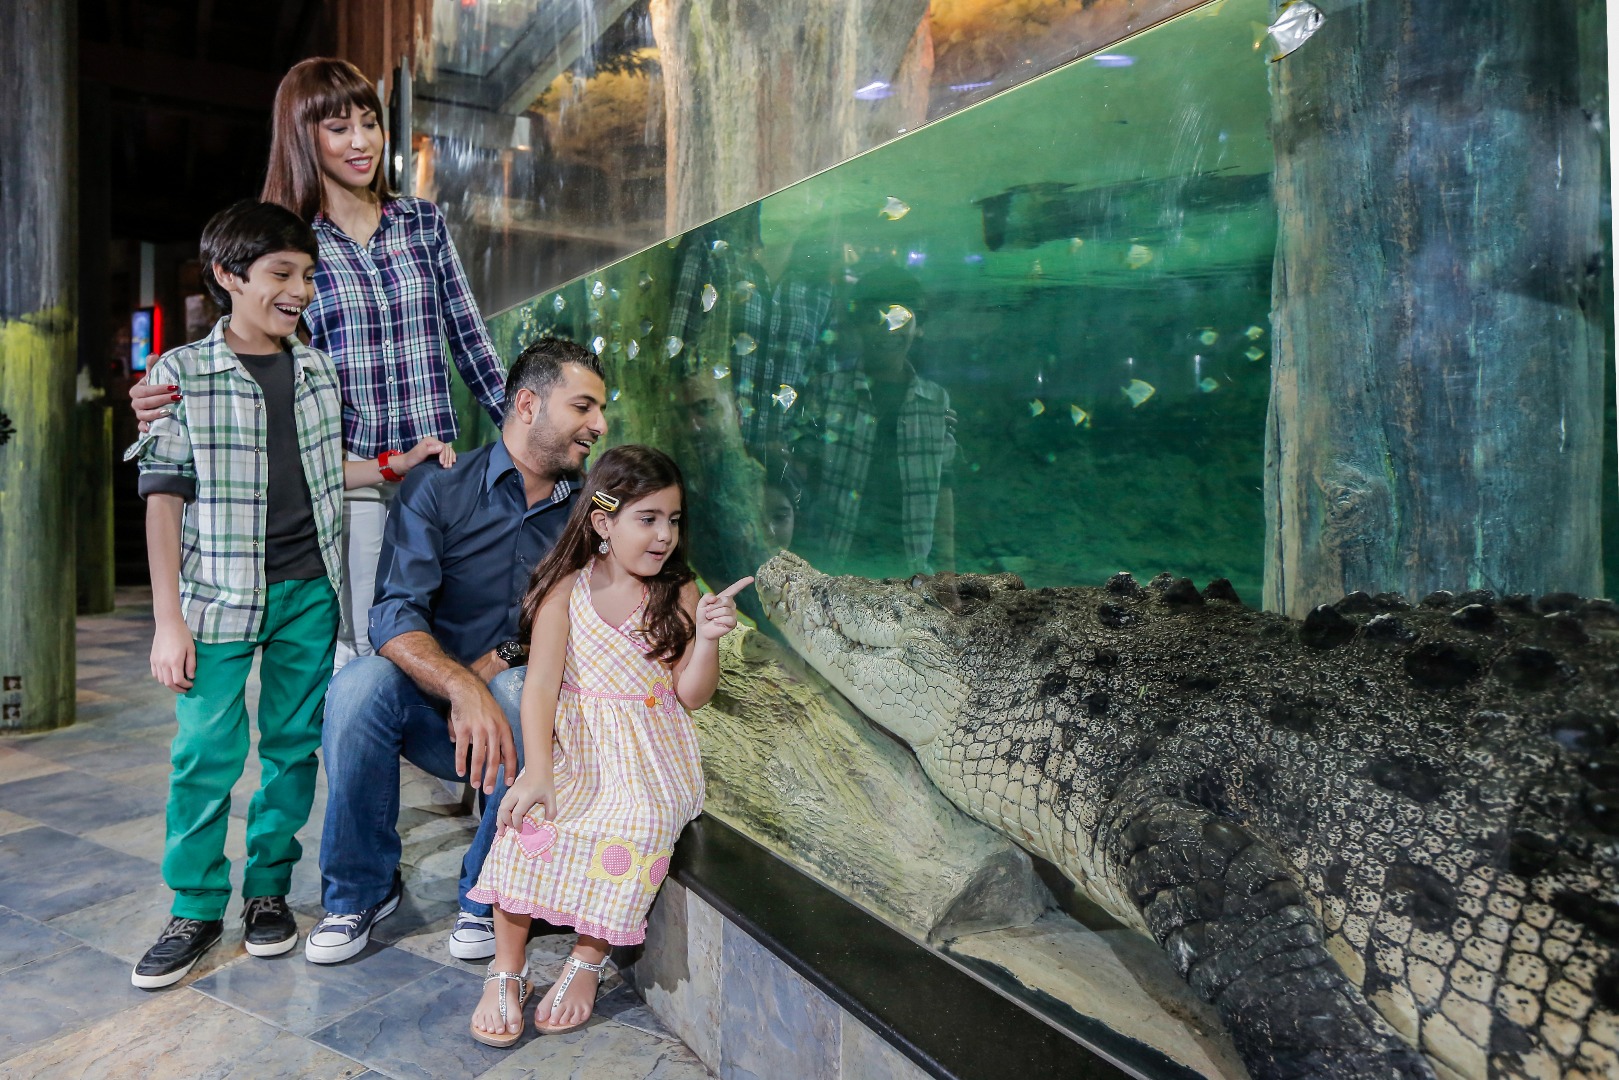 迪拜水族館 & 水下動物園門票